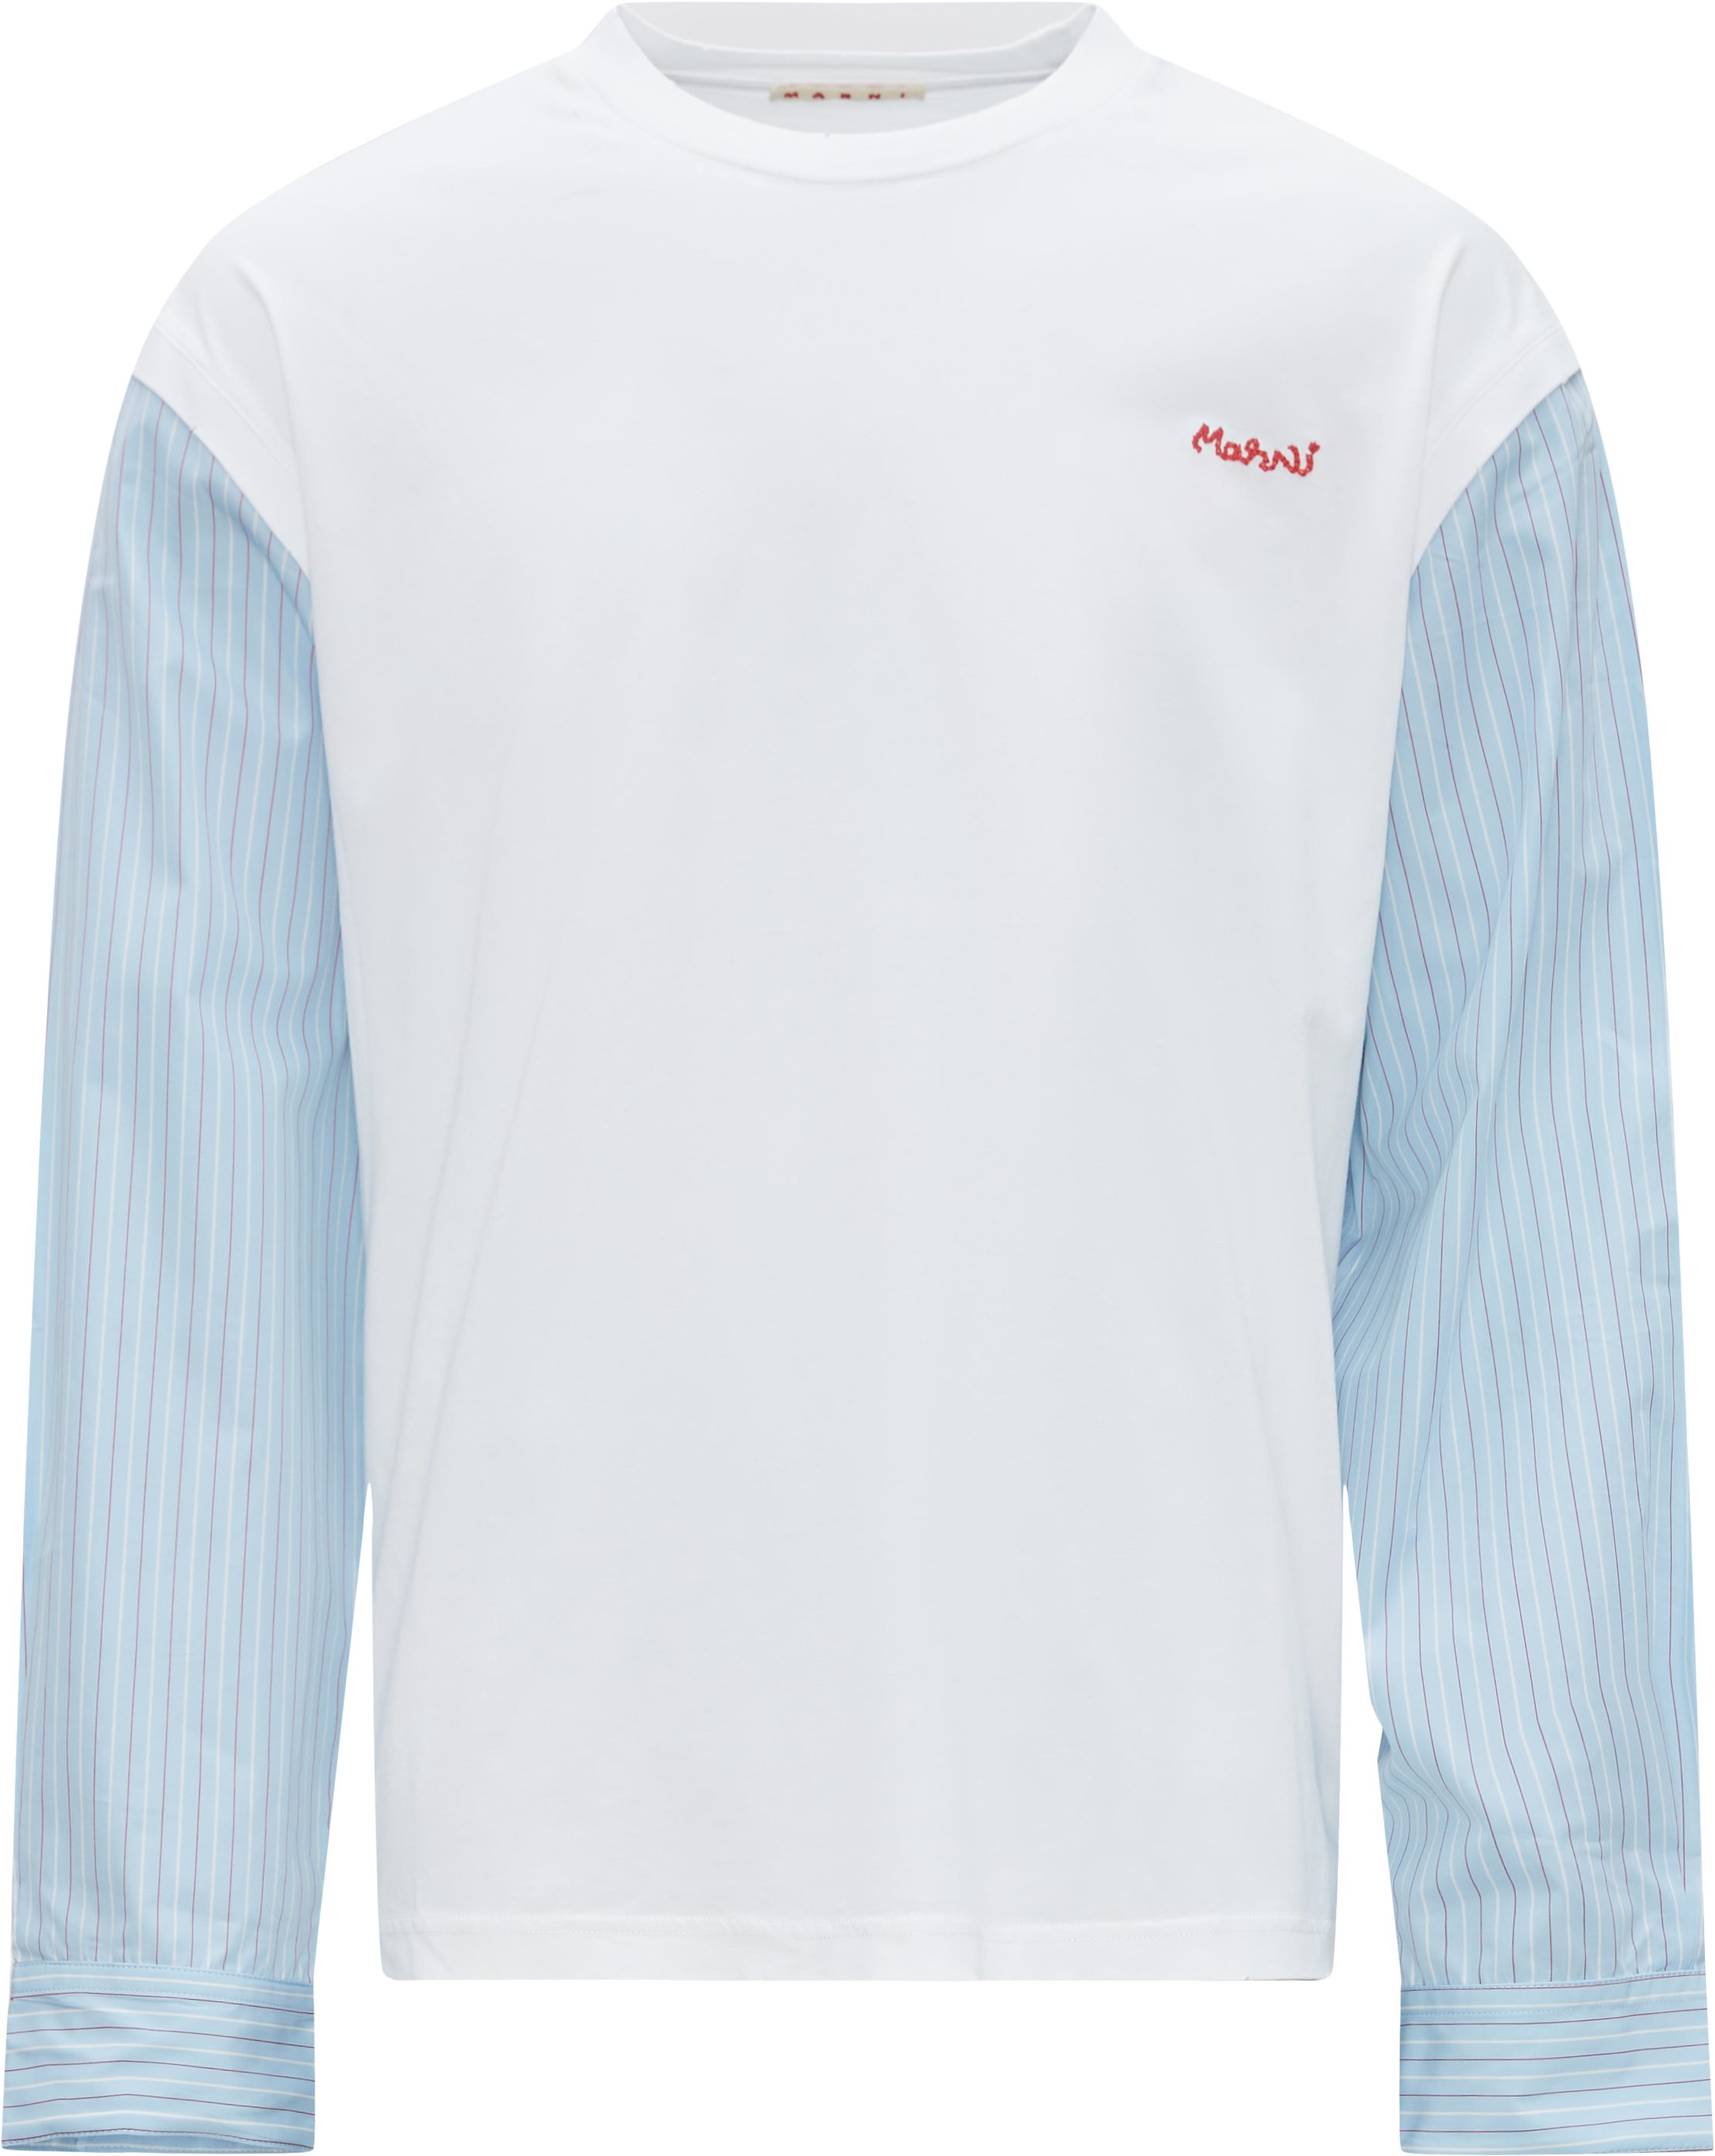 Marni T-shirts HUMU025Q1 UTCZ57 White